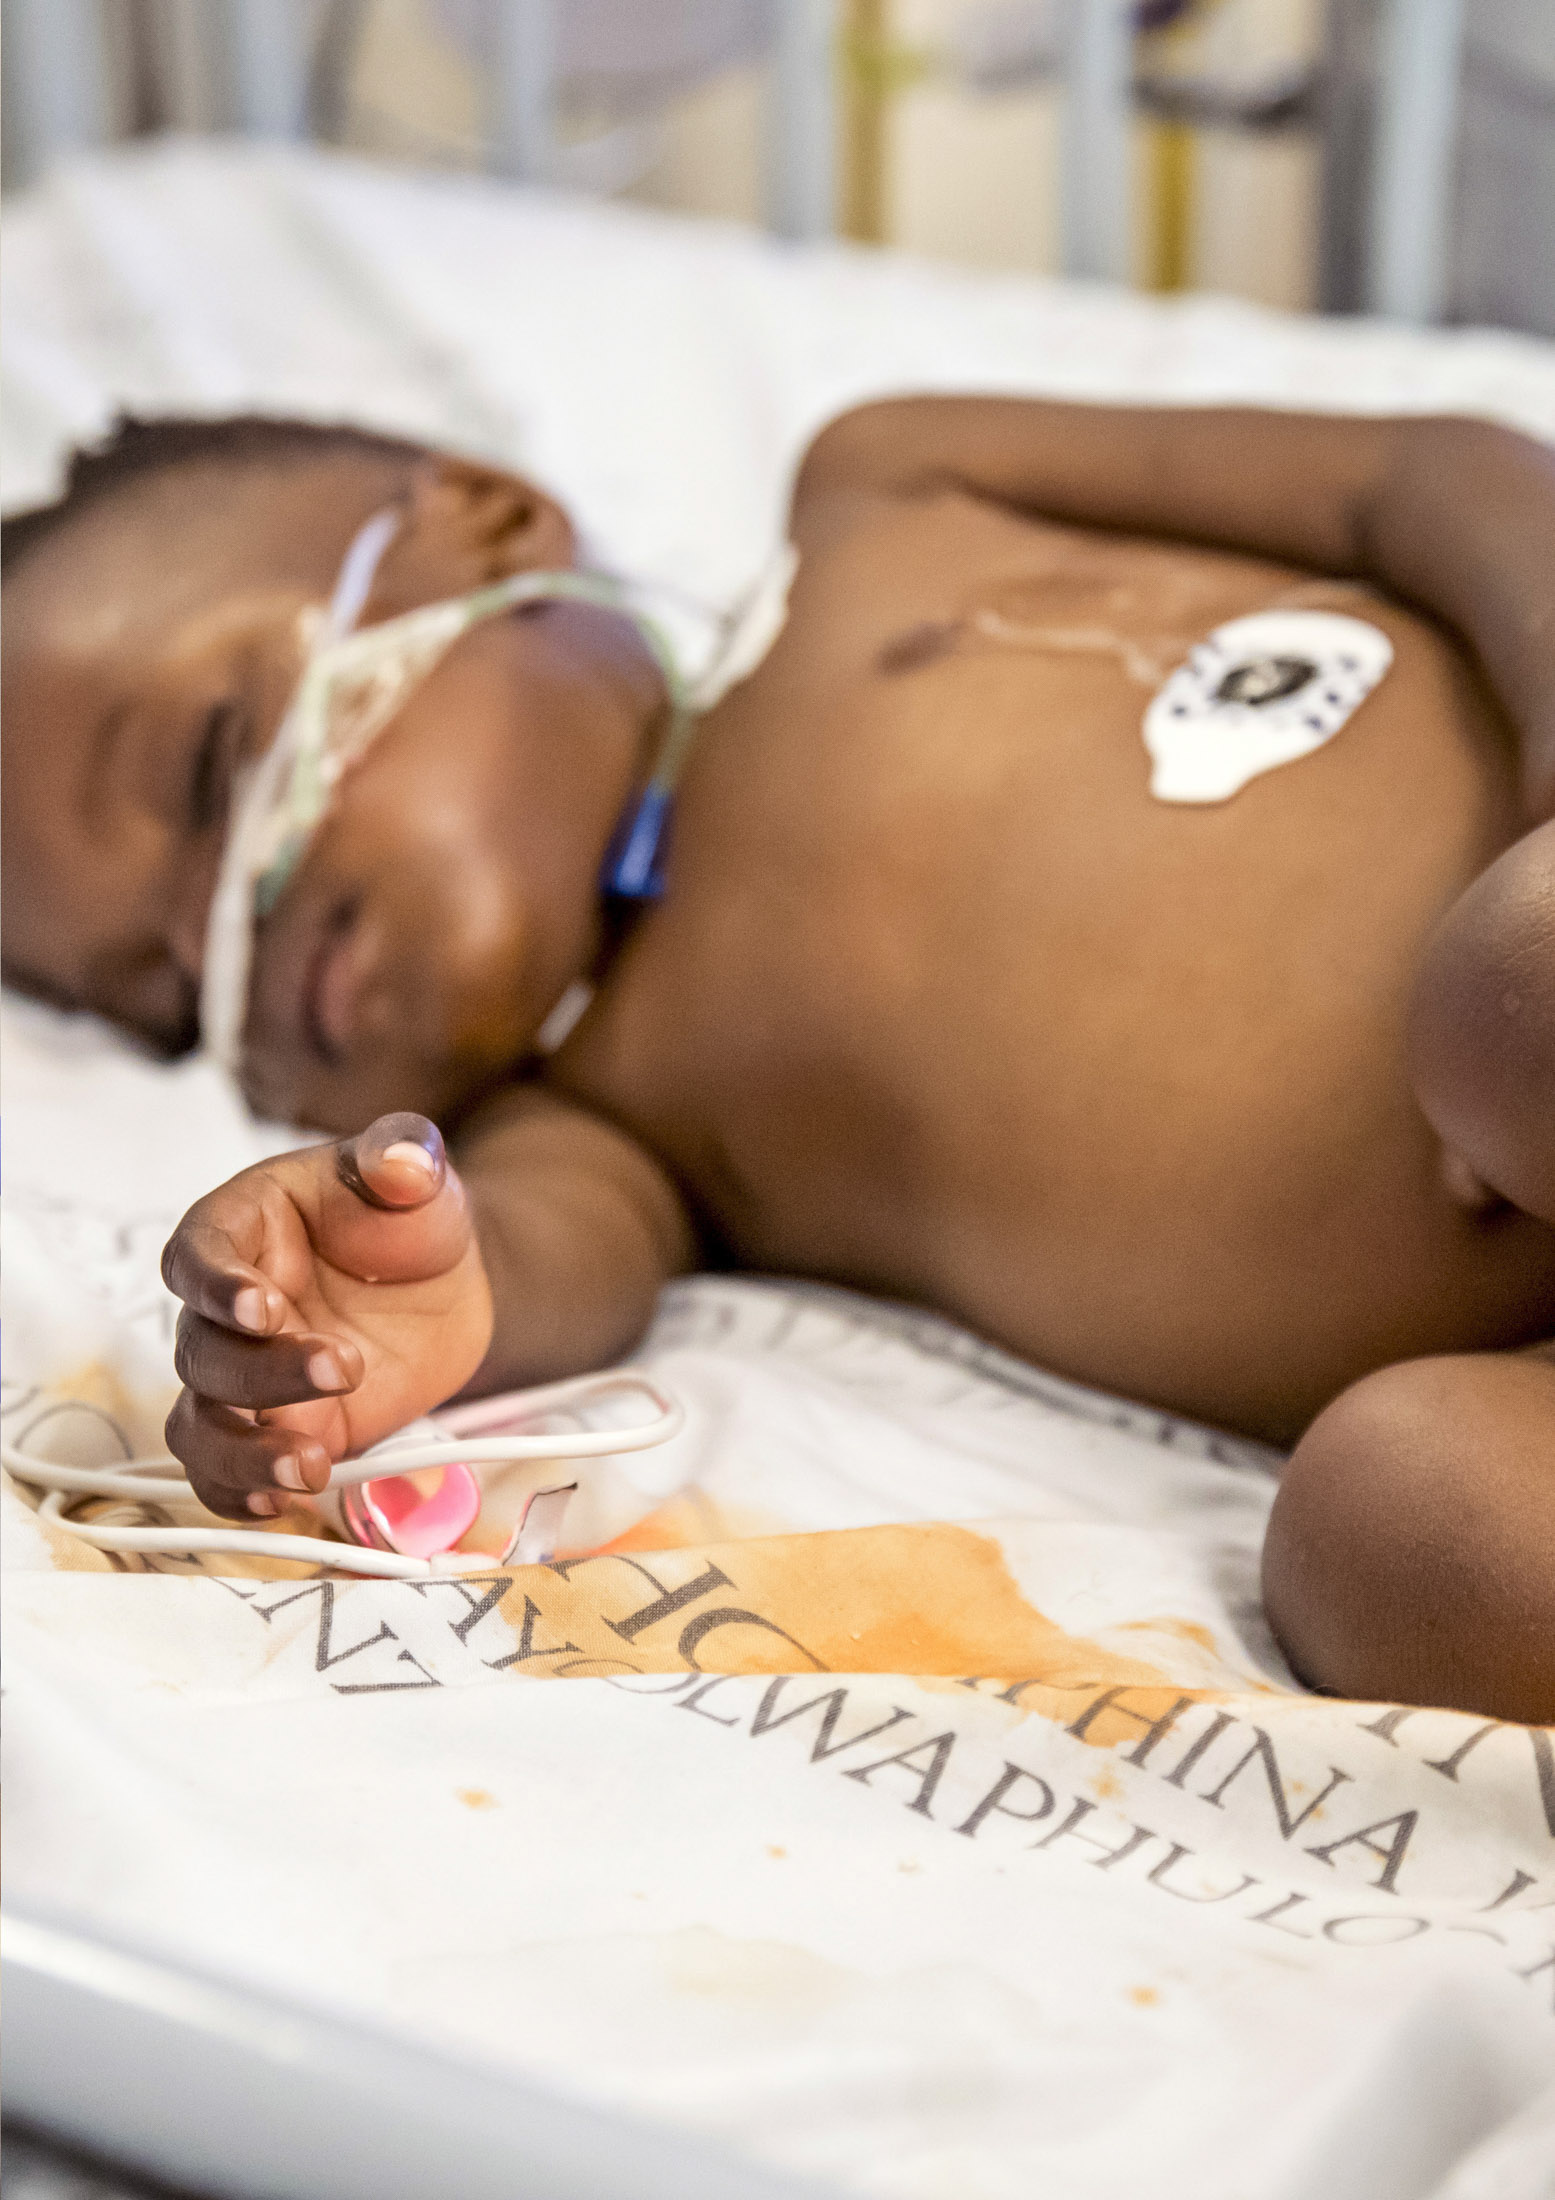 Ein Neugeborenes mit dunkler Haut, das ein Krankenhausarmband und Überwachungssensoren trägt, schläft auf einer Decke. Der Fokus liegt auf der Hand des Babys. © Fotografie Tomas Rodriguez